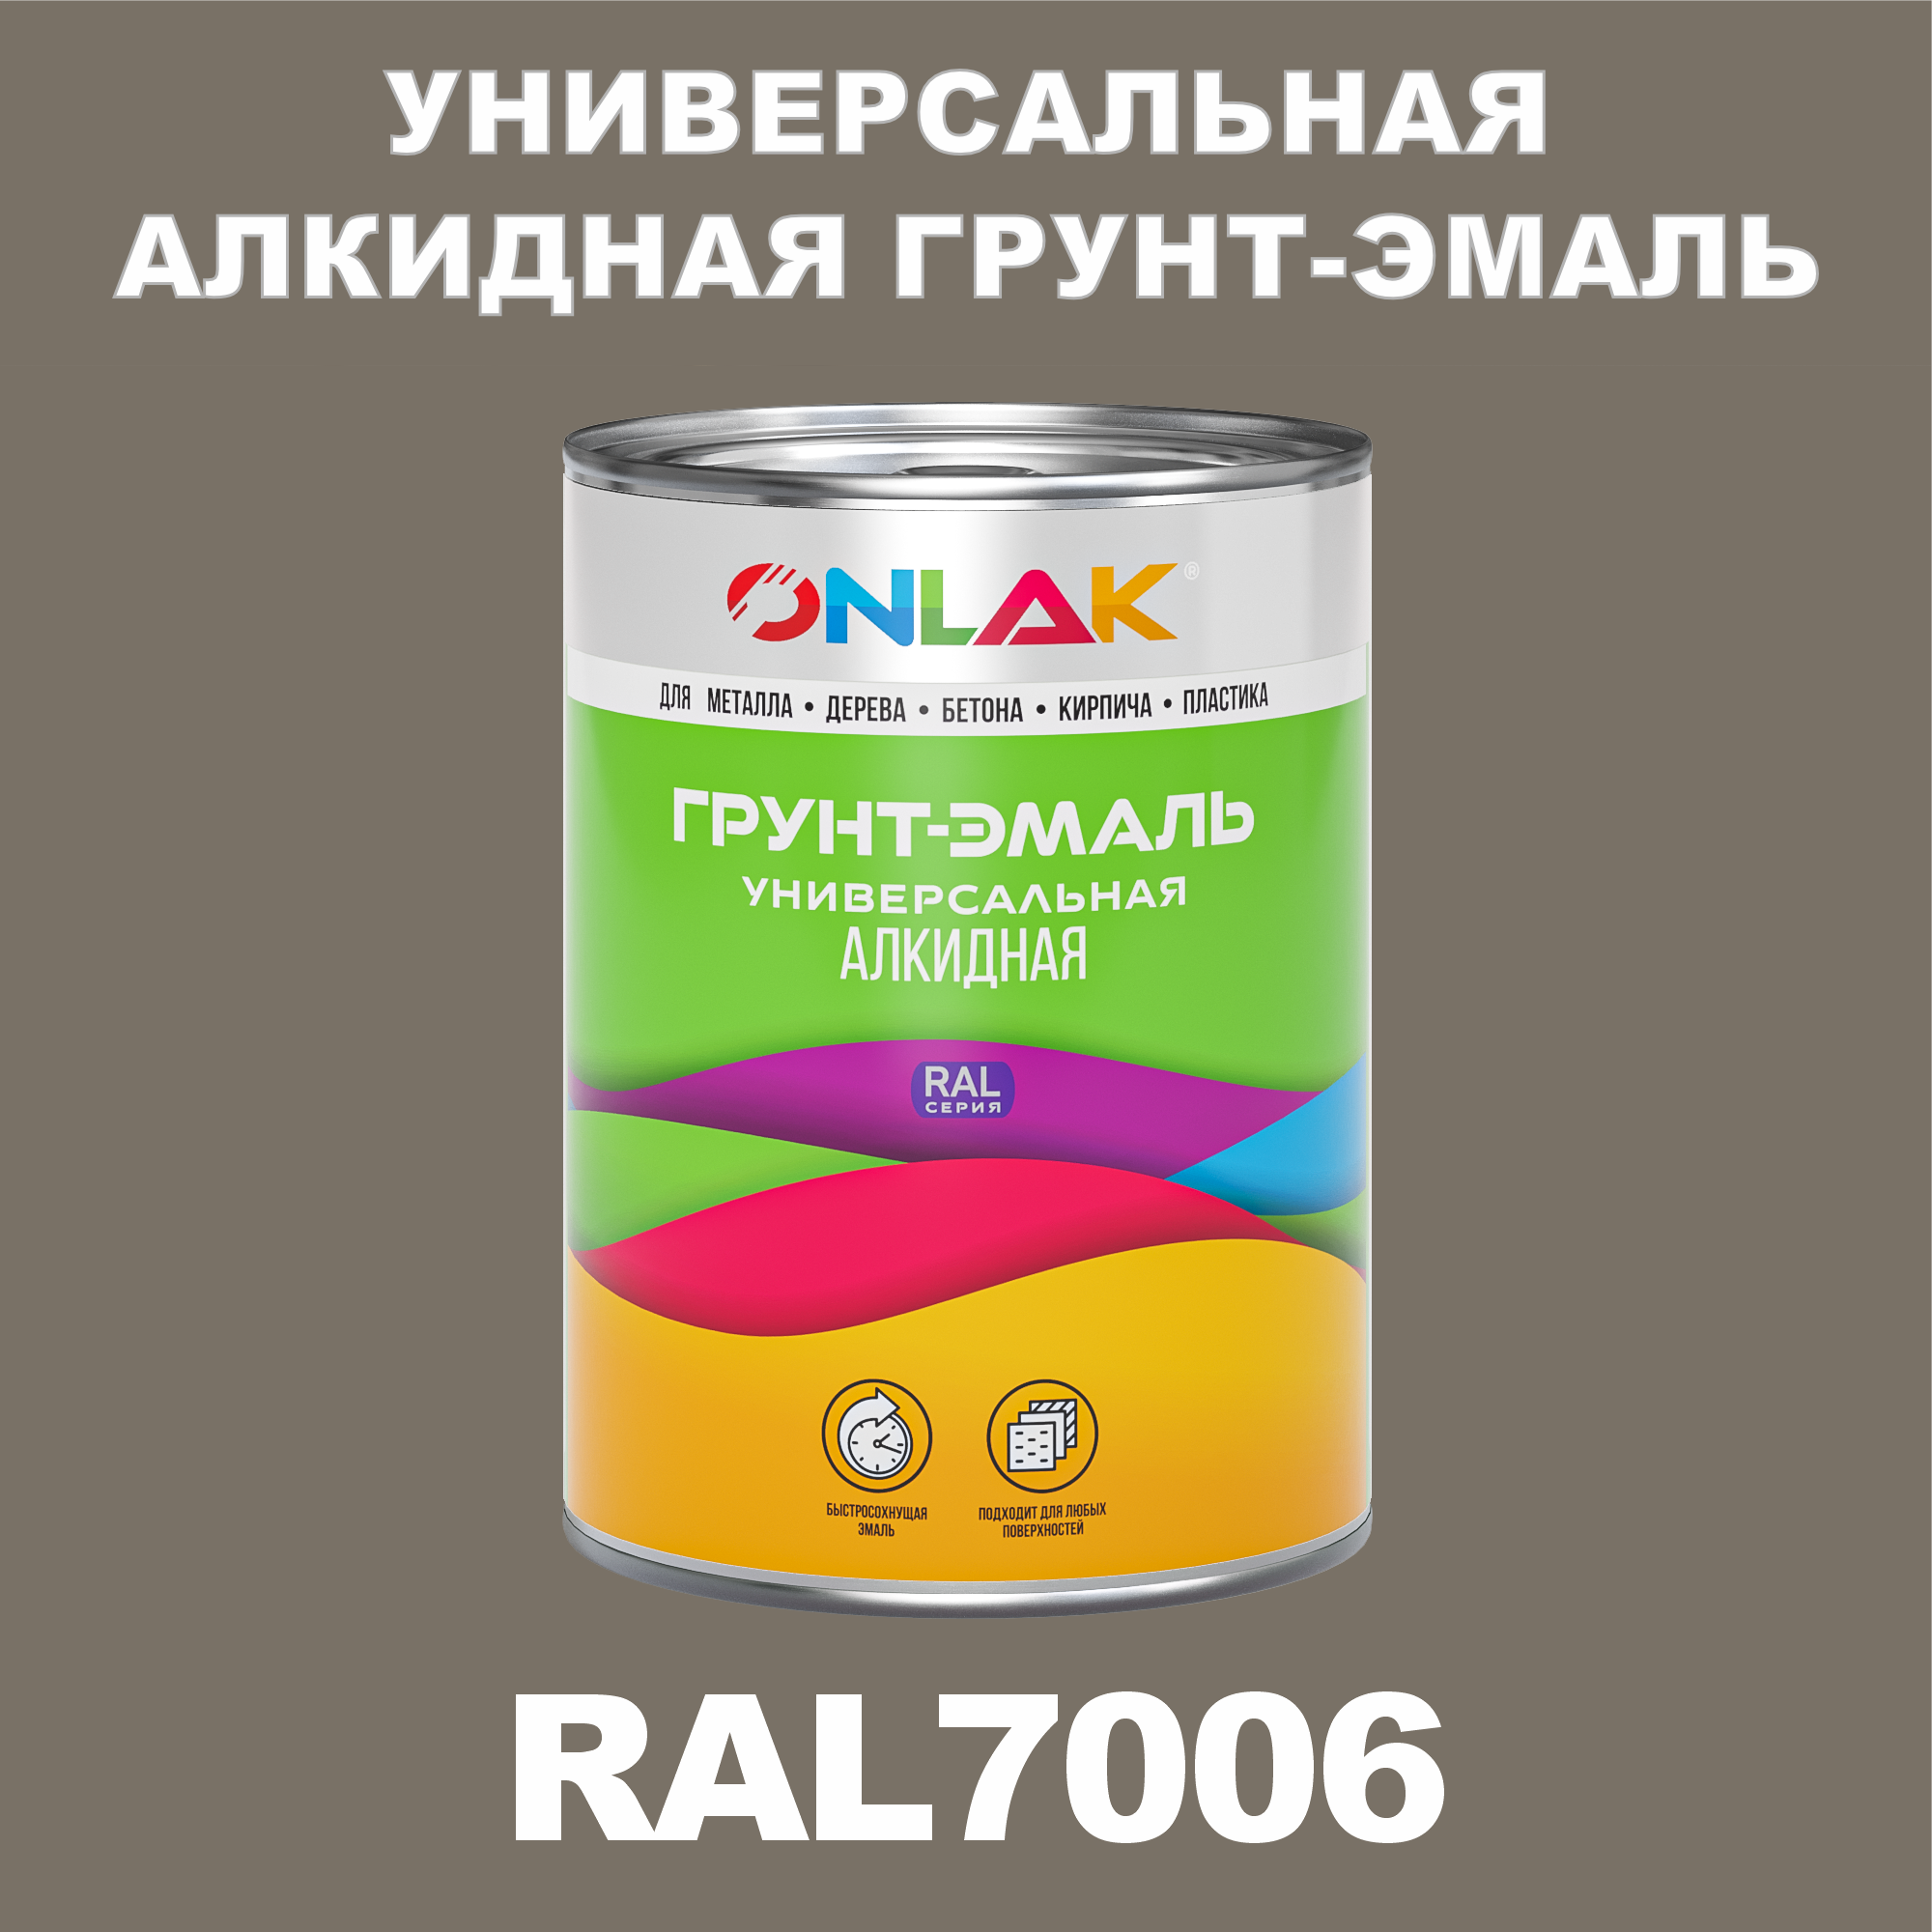 Грунт-эмаль ONLAK 1К RAL7006 антикоррозионная алкидная по металлу по ржавчине 1 кг грунт эмаль neomid по ржавчине быстросохнущая алкидная серая 0 9 кг